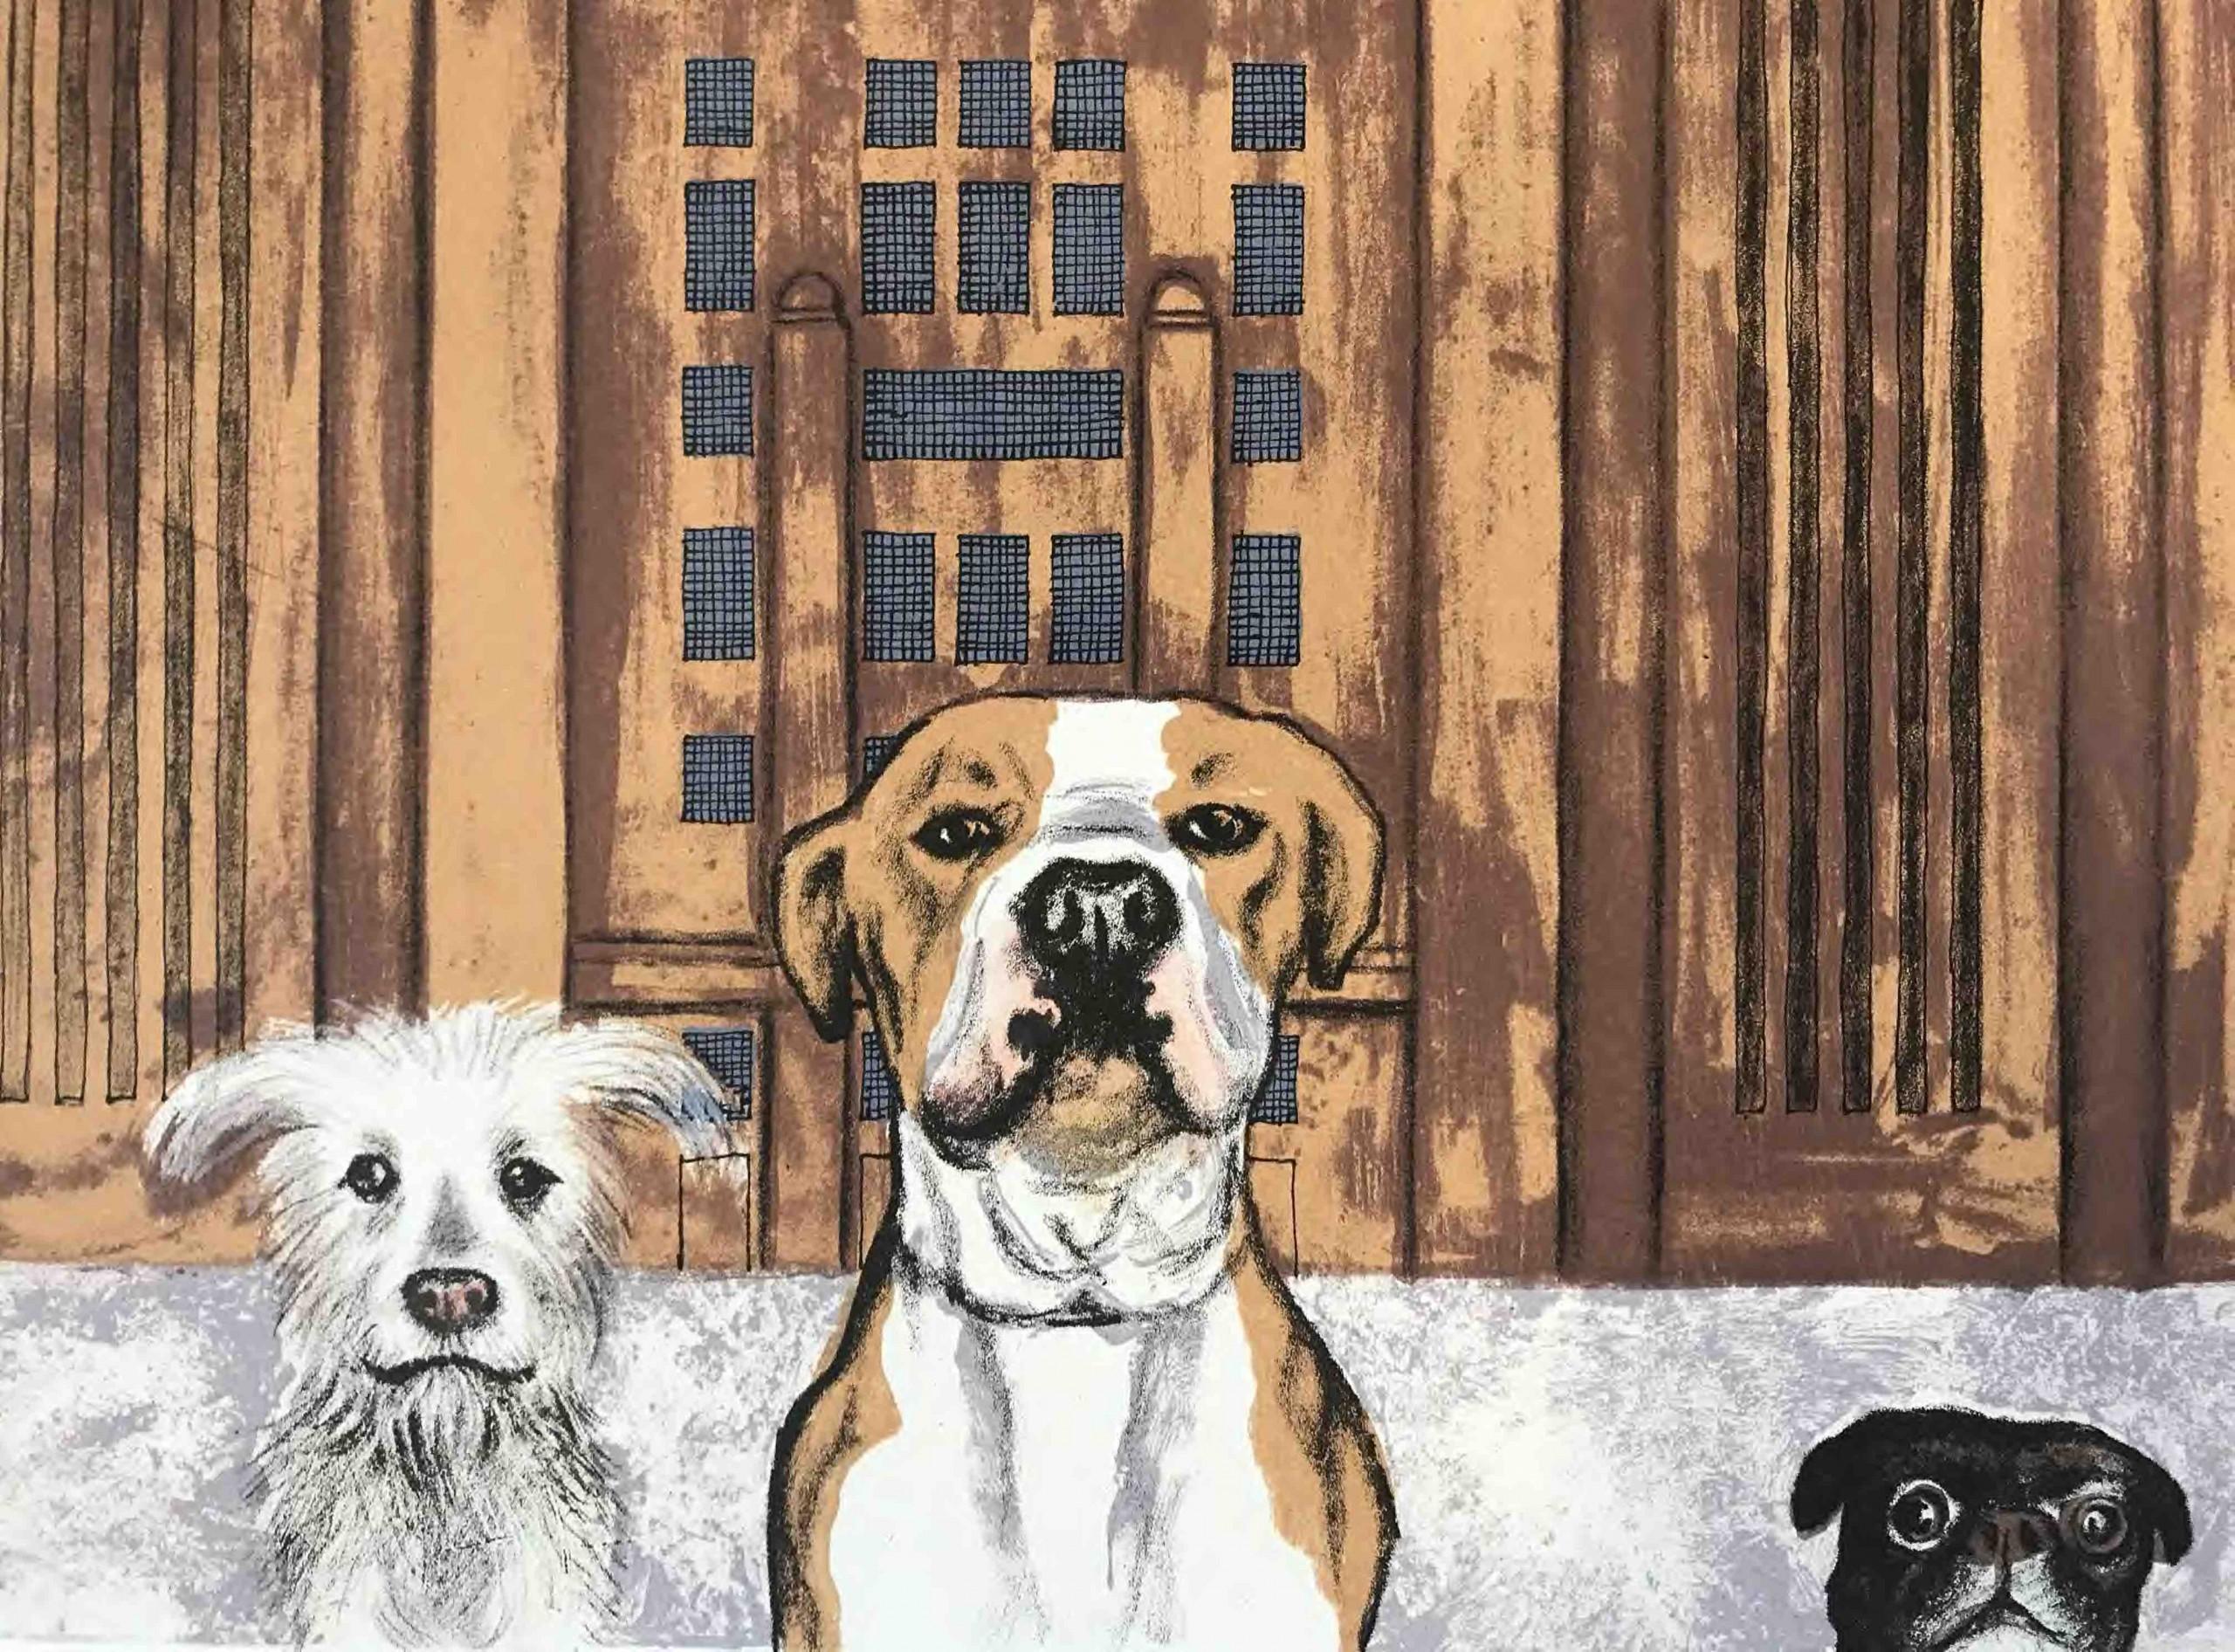 Dogs de Wes Anderson - Battersea Power Station par l'artiste Mychael Barratt est une impression en édition limitée. Cette scène humoristique représente trois chiens regardant par-dessus le bord de l'image, avec un cochon flottant entre les tuyaux de